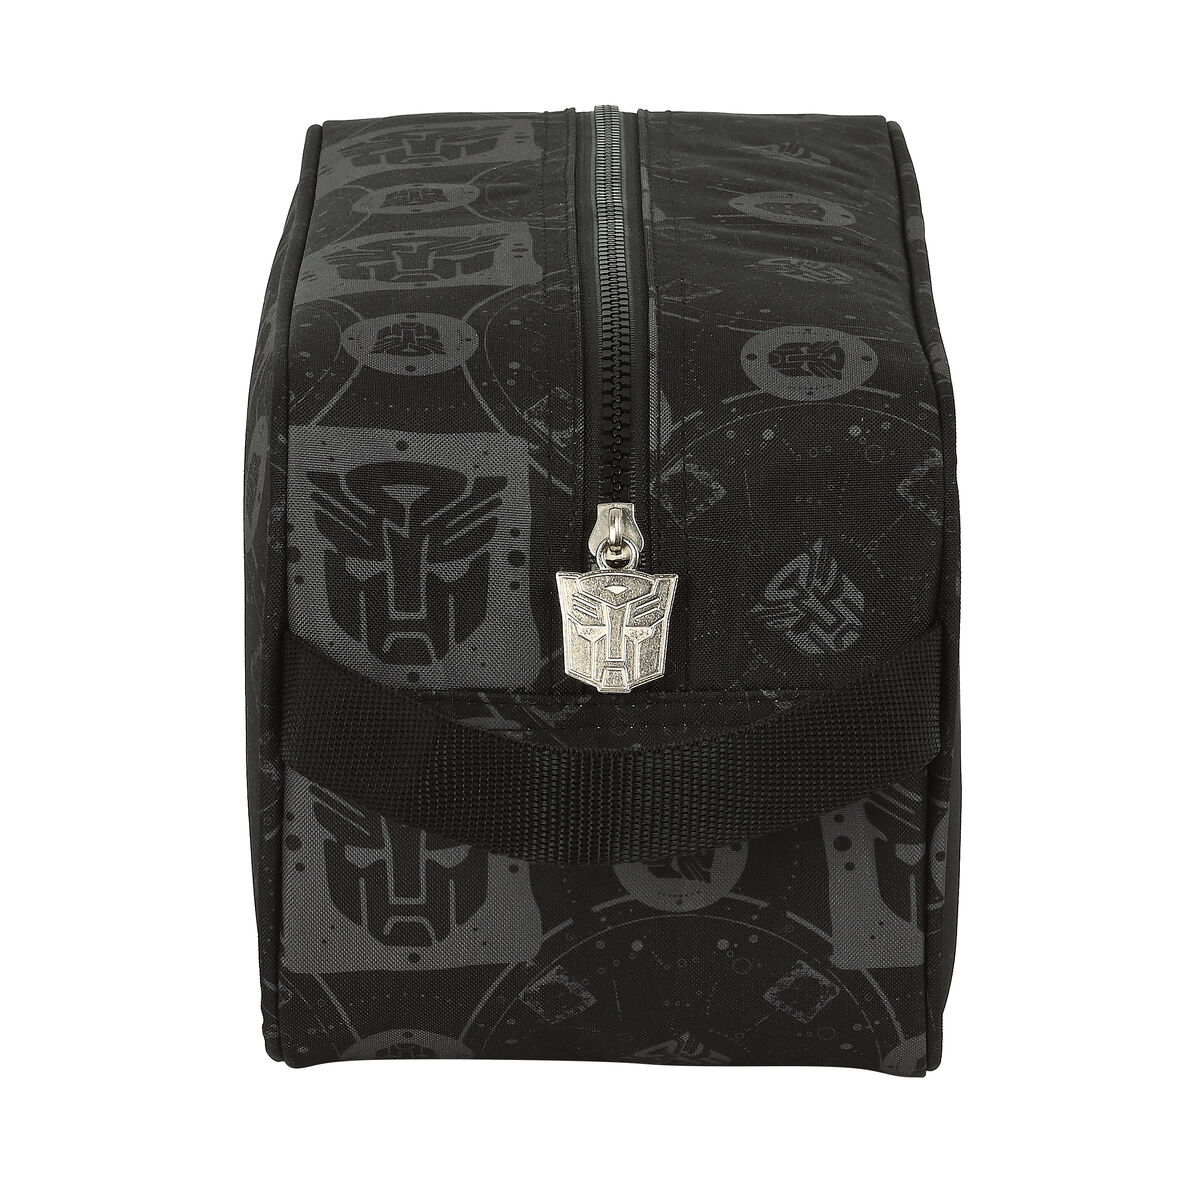 Schuhtasche für die Reise Transformers 29 x 15 x 14 cm Schwarz